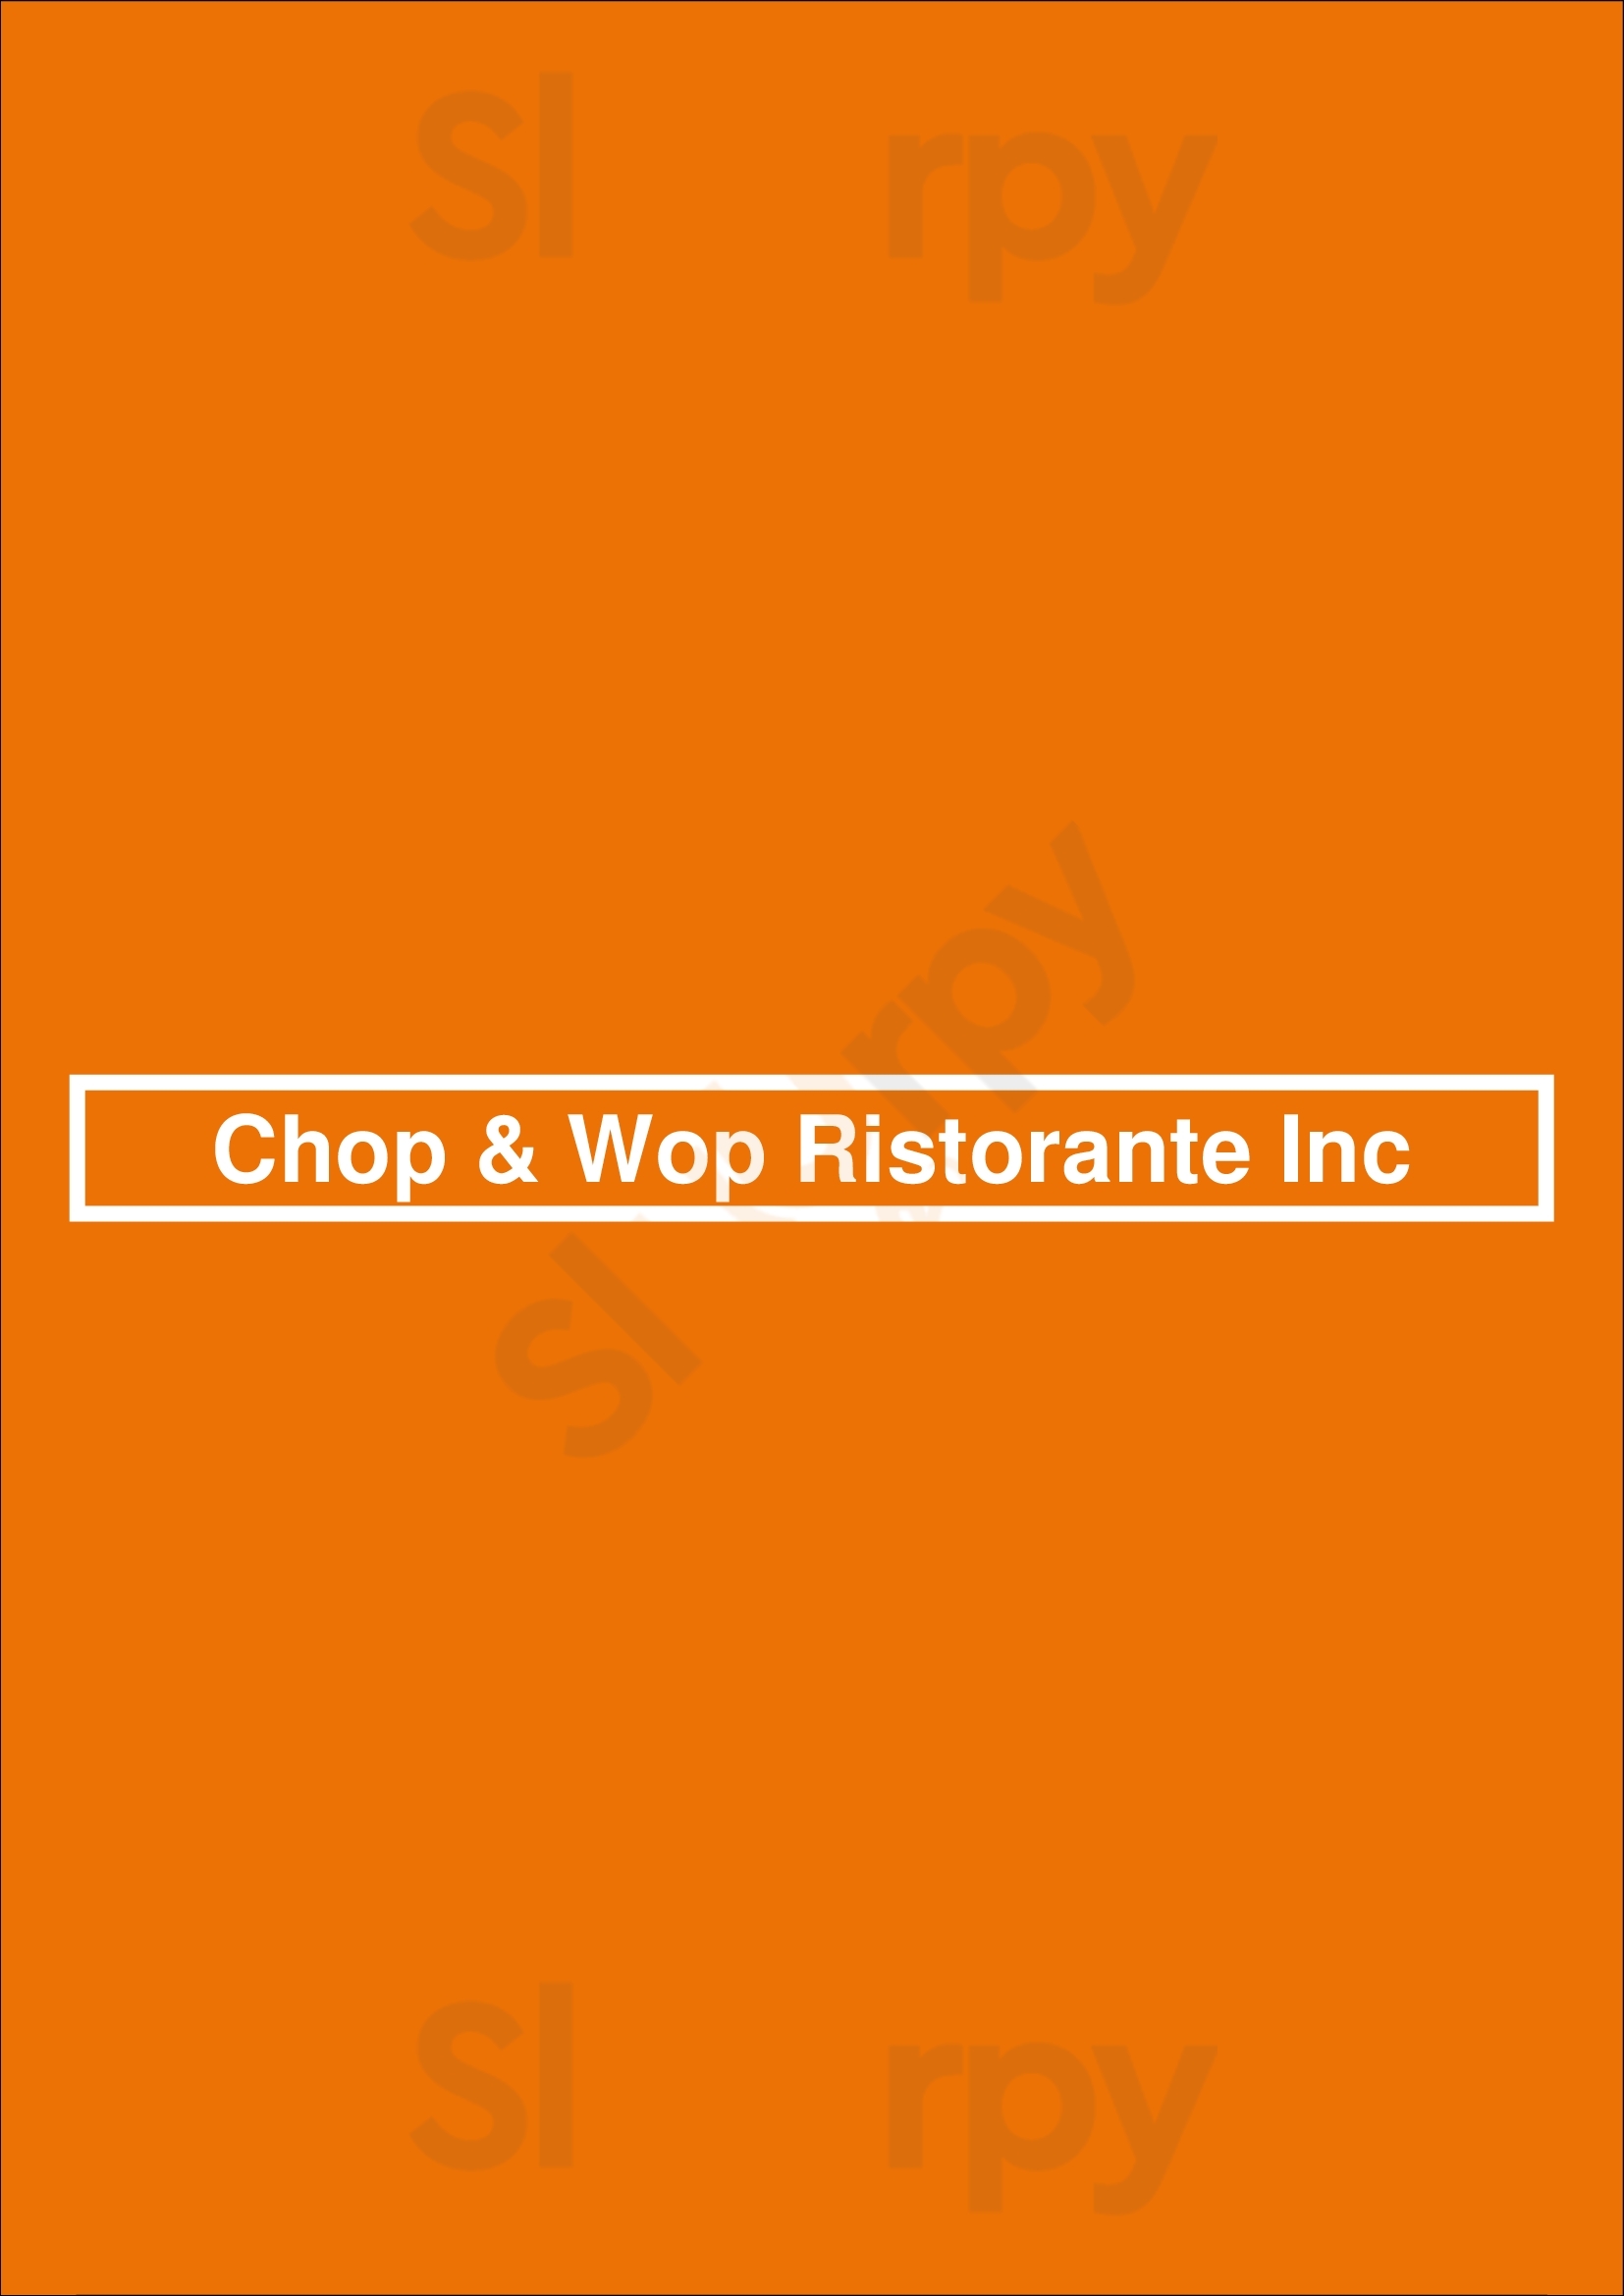 Chop & Wop Ristorante Inc Burlington Menu - 1